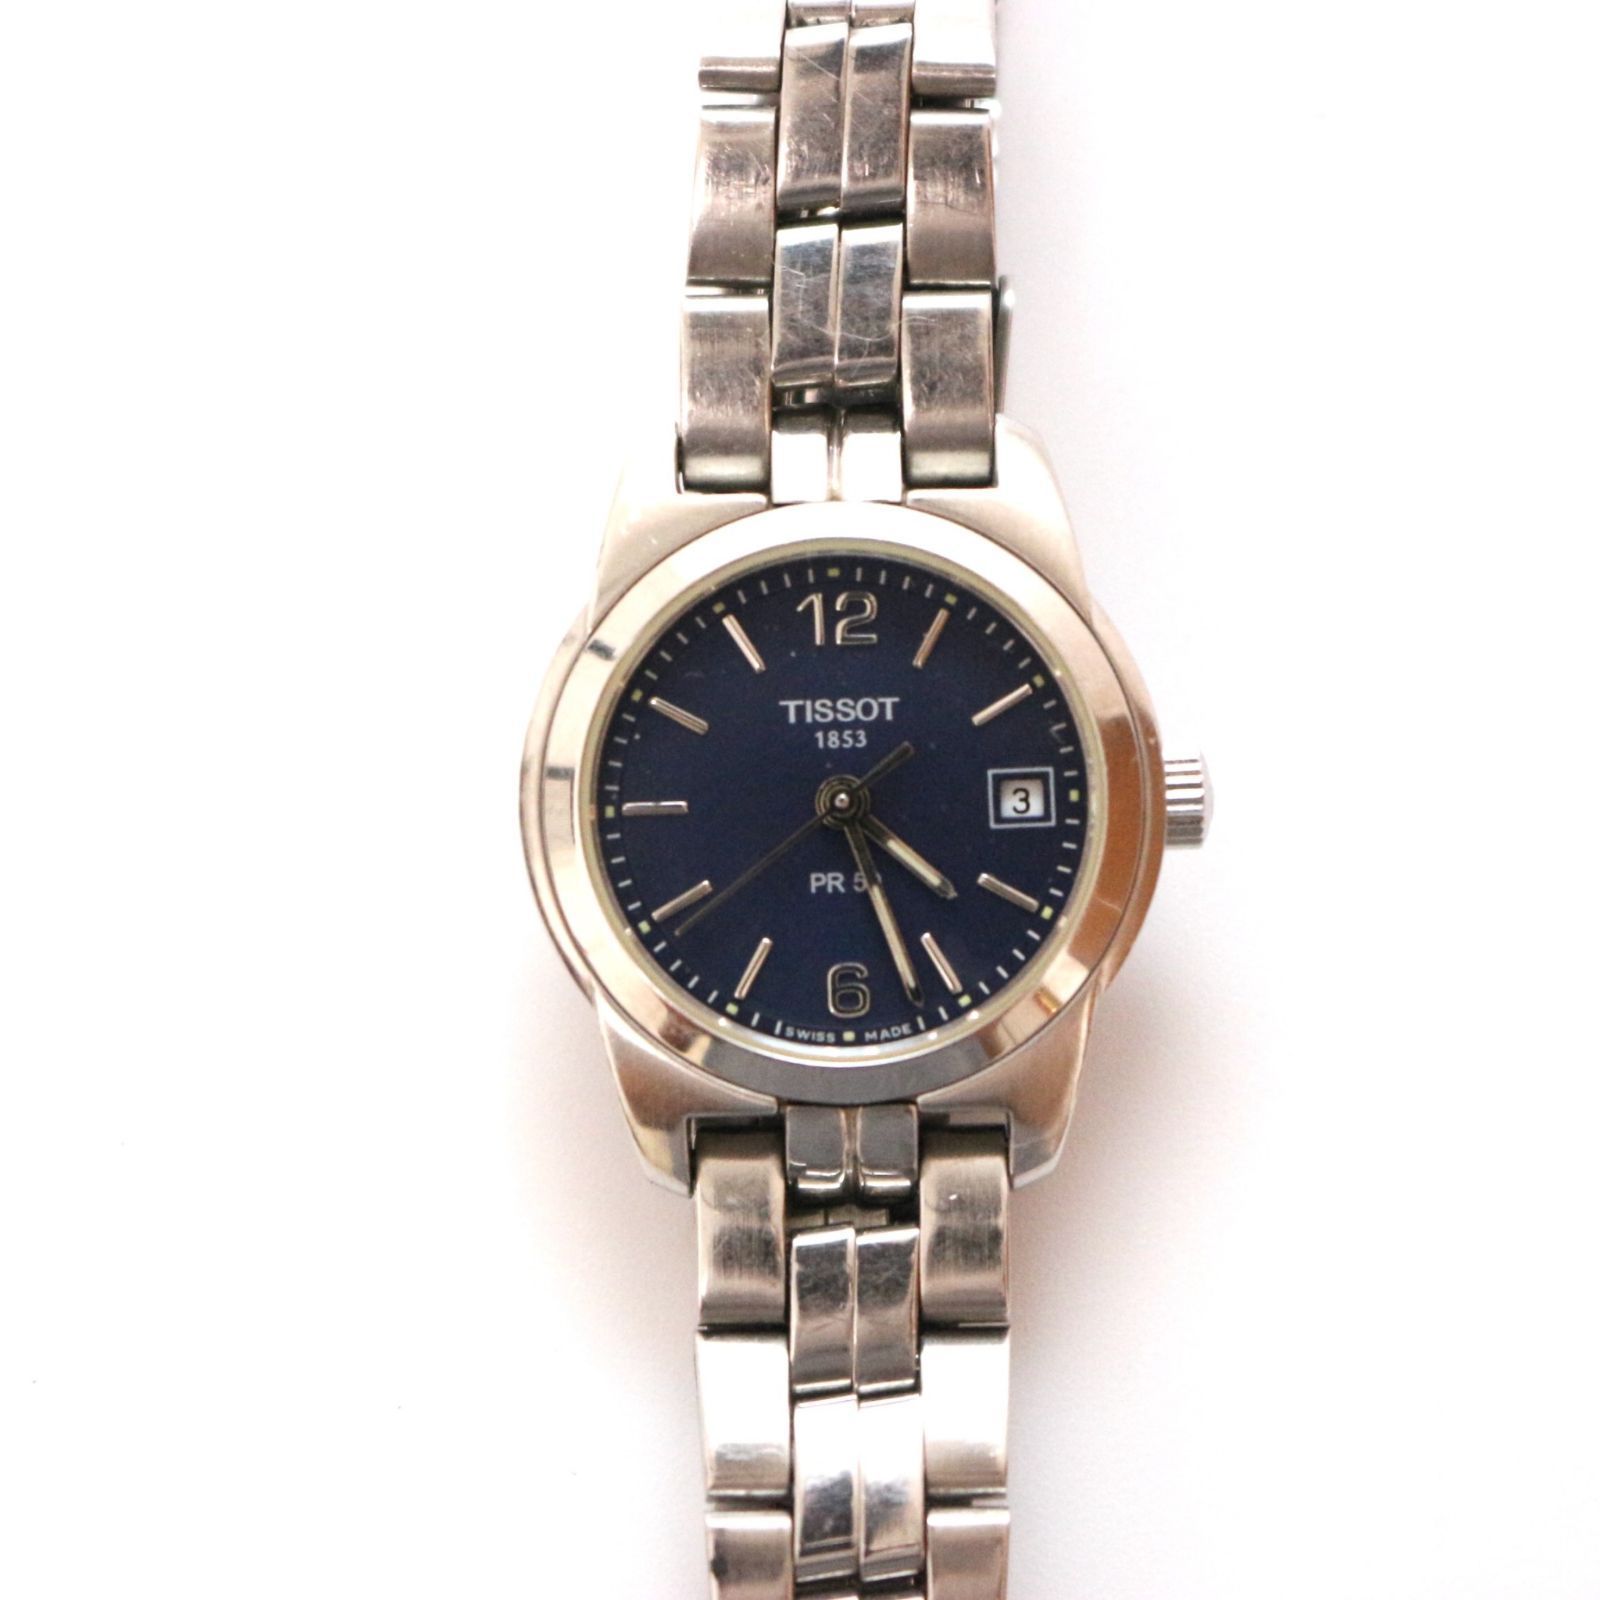 ティソ 1853 PR50 SKN-BB orologio オロロジオ 腕時計 watch スイス製